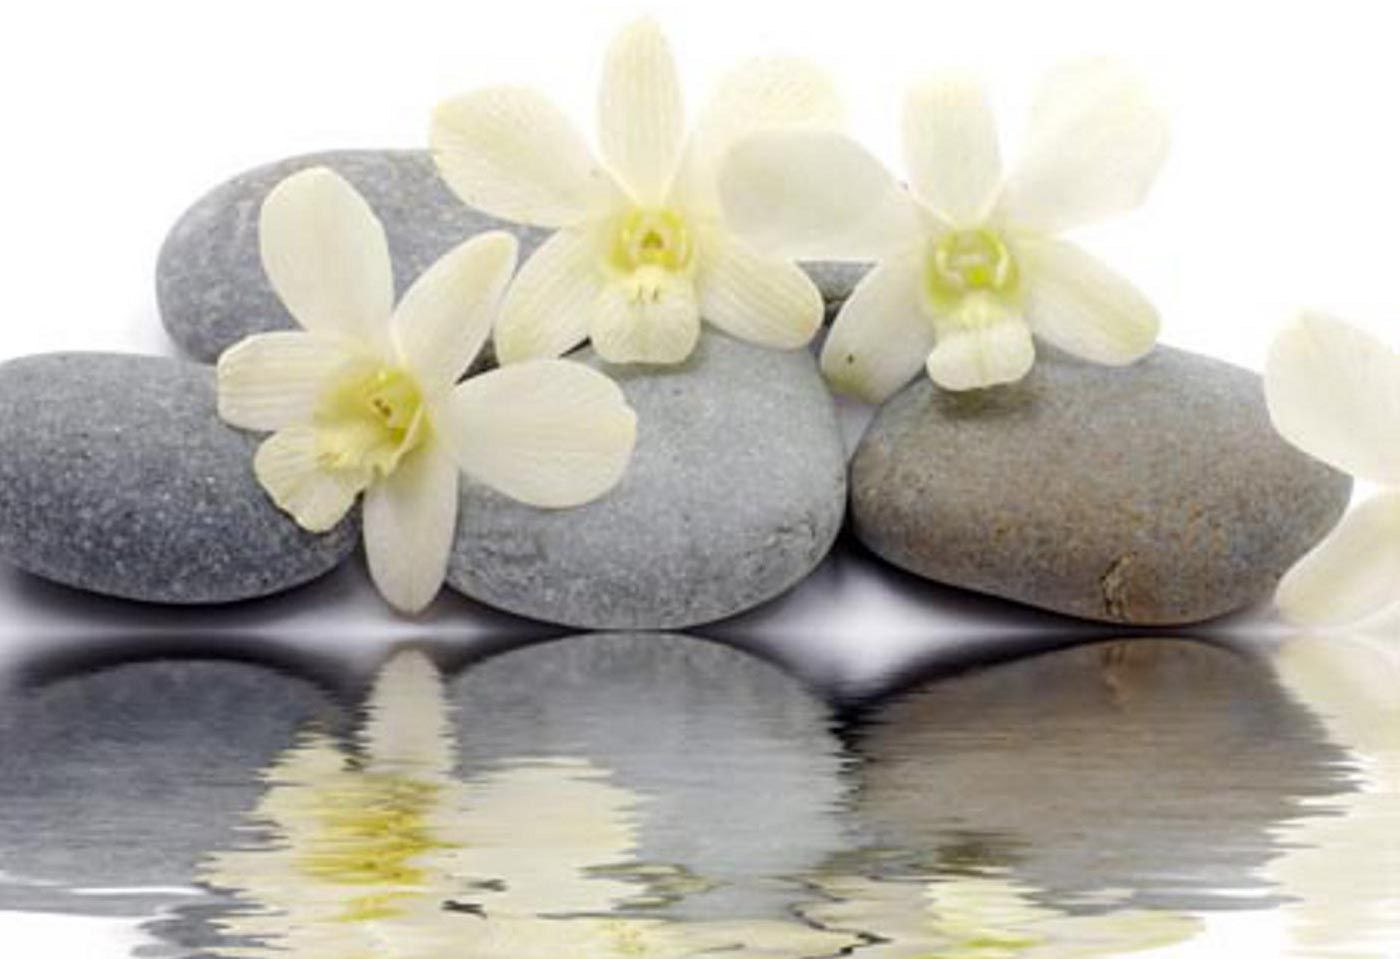 Hd wallpapers zen stones reflecting white flowers new desktop